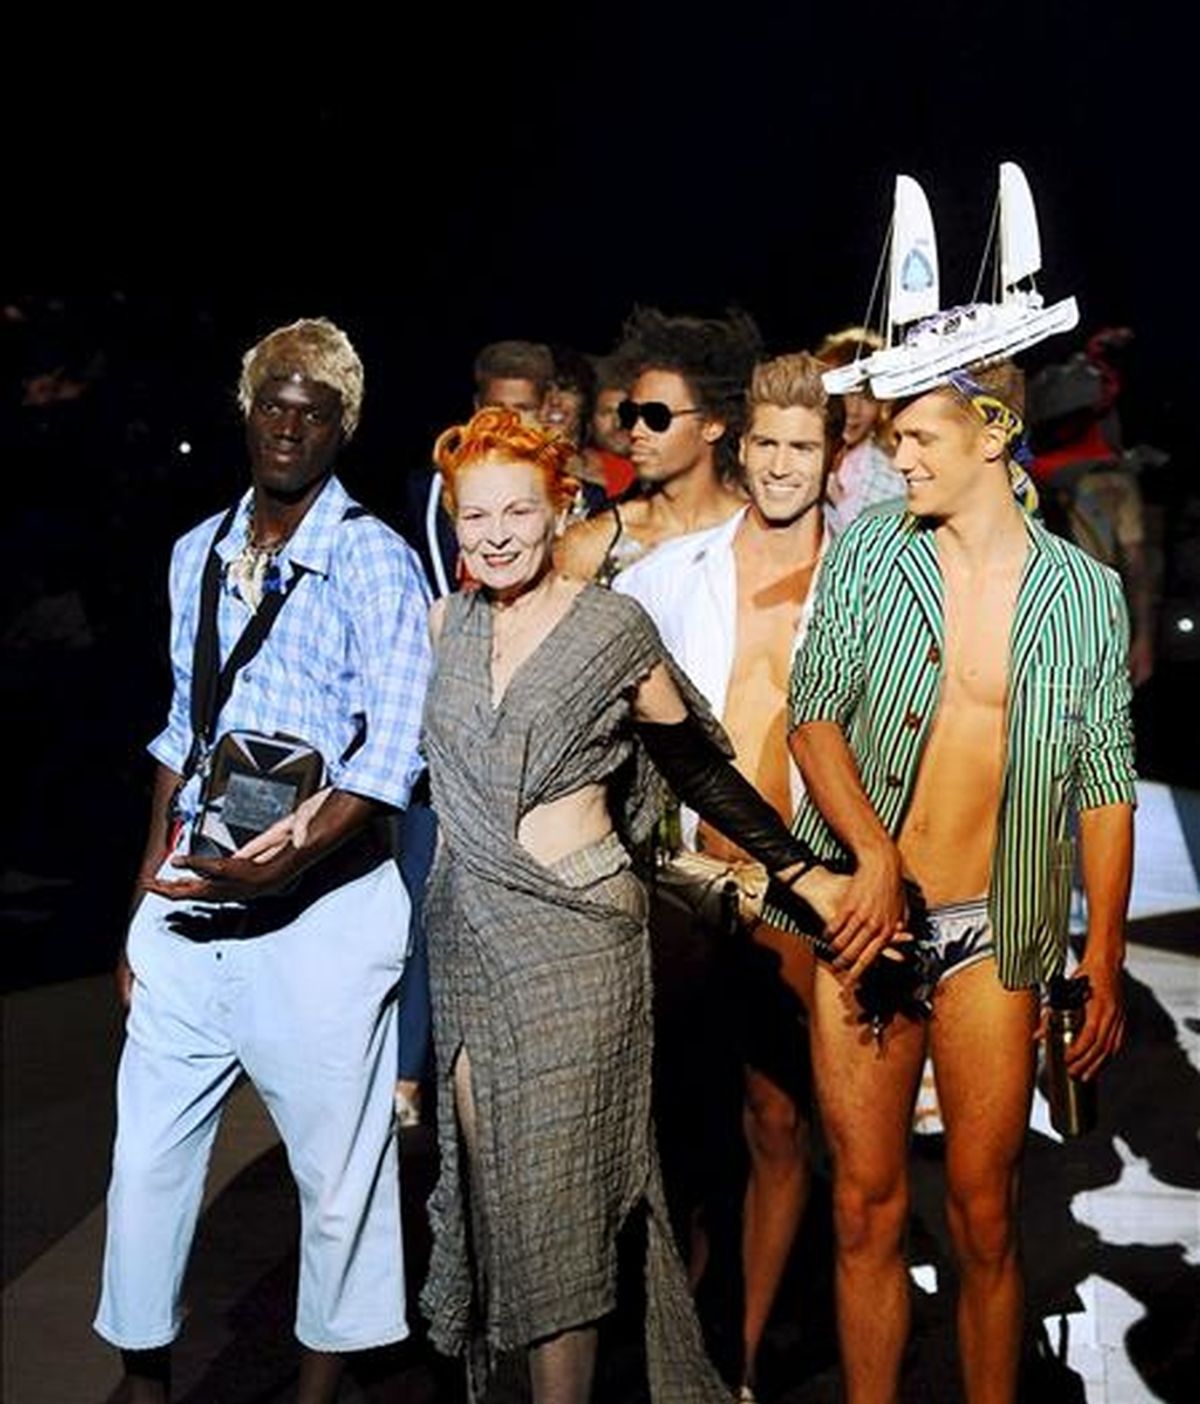 La diseñadora británica Vivienne Westwood (c) camina por la pasarela con sus modelos al final de la presentación de su colección primavera-verano 2011 en la Semana de la Moda Masculina de Milán, Italia, el 20 de junio de 2010. EFE/Archivo